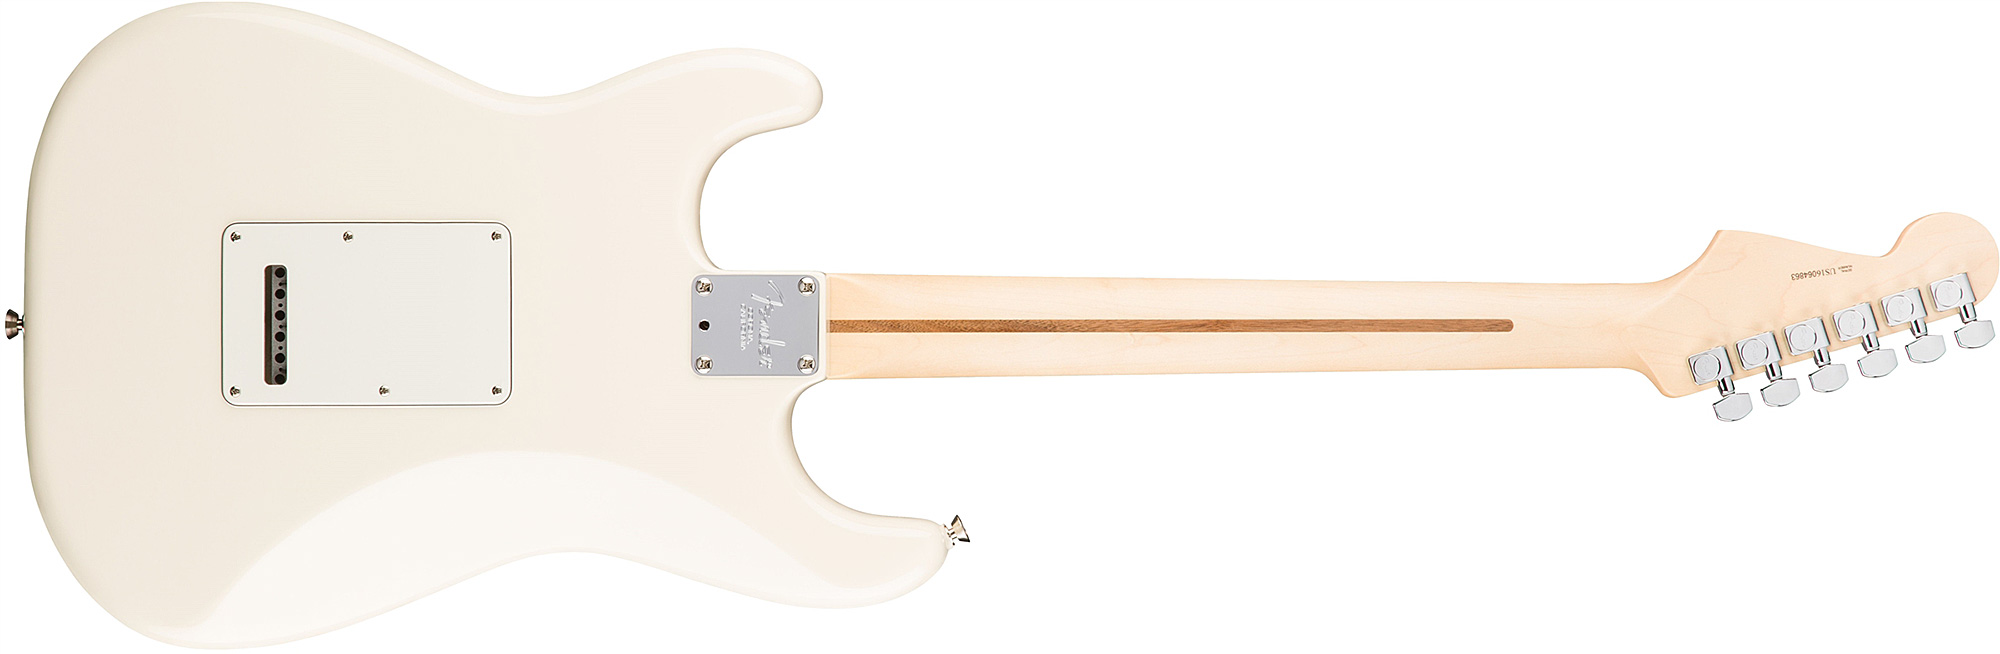 Fender Strat American Professional 2017 3s Usa Rw - Olympic White - Elektrische gitaar in Str-vorm - Variation 1